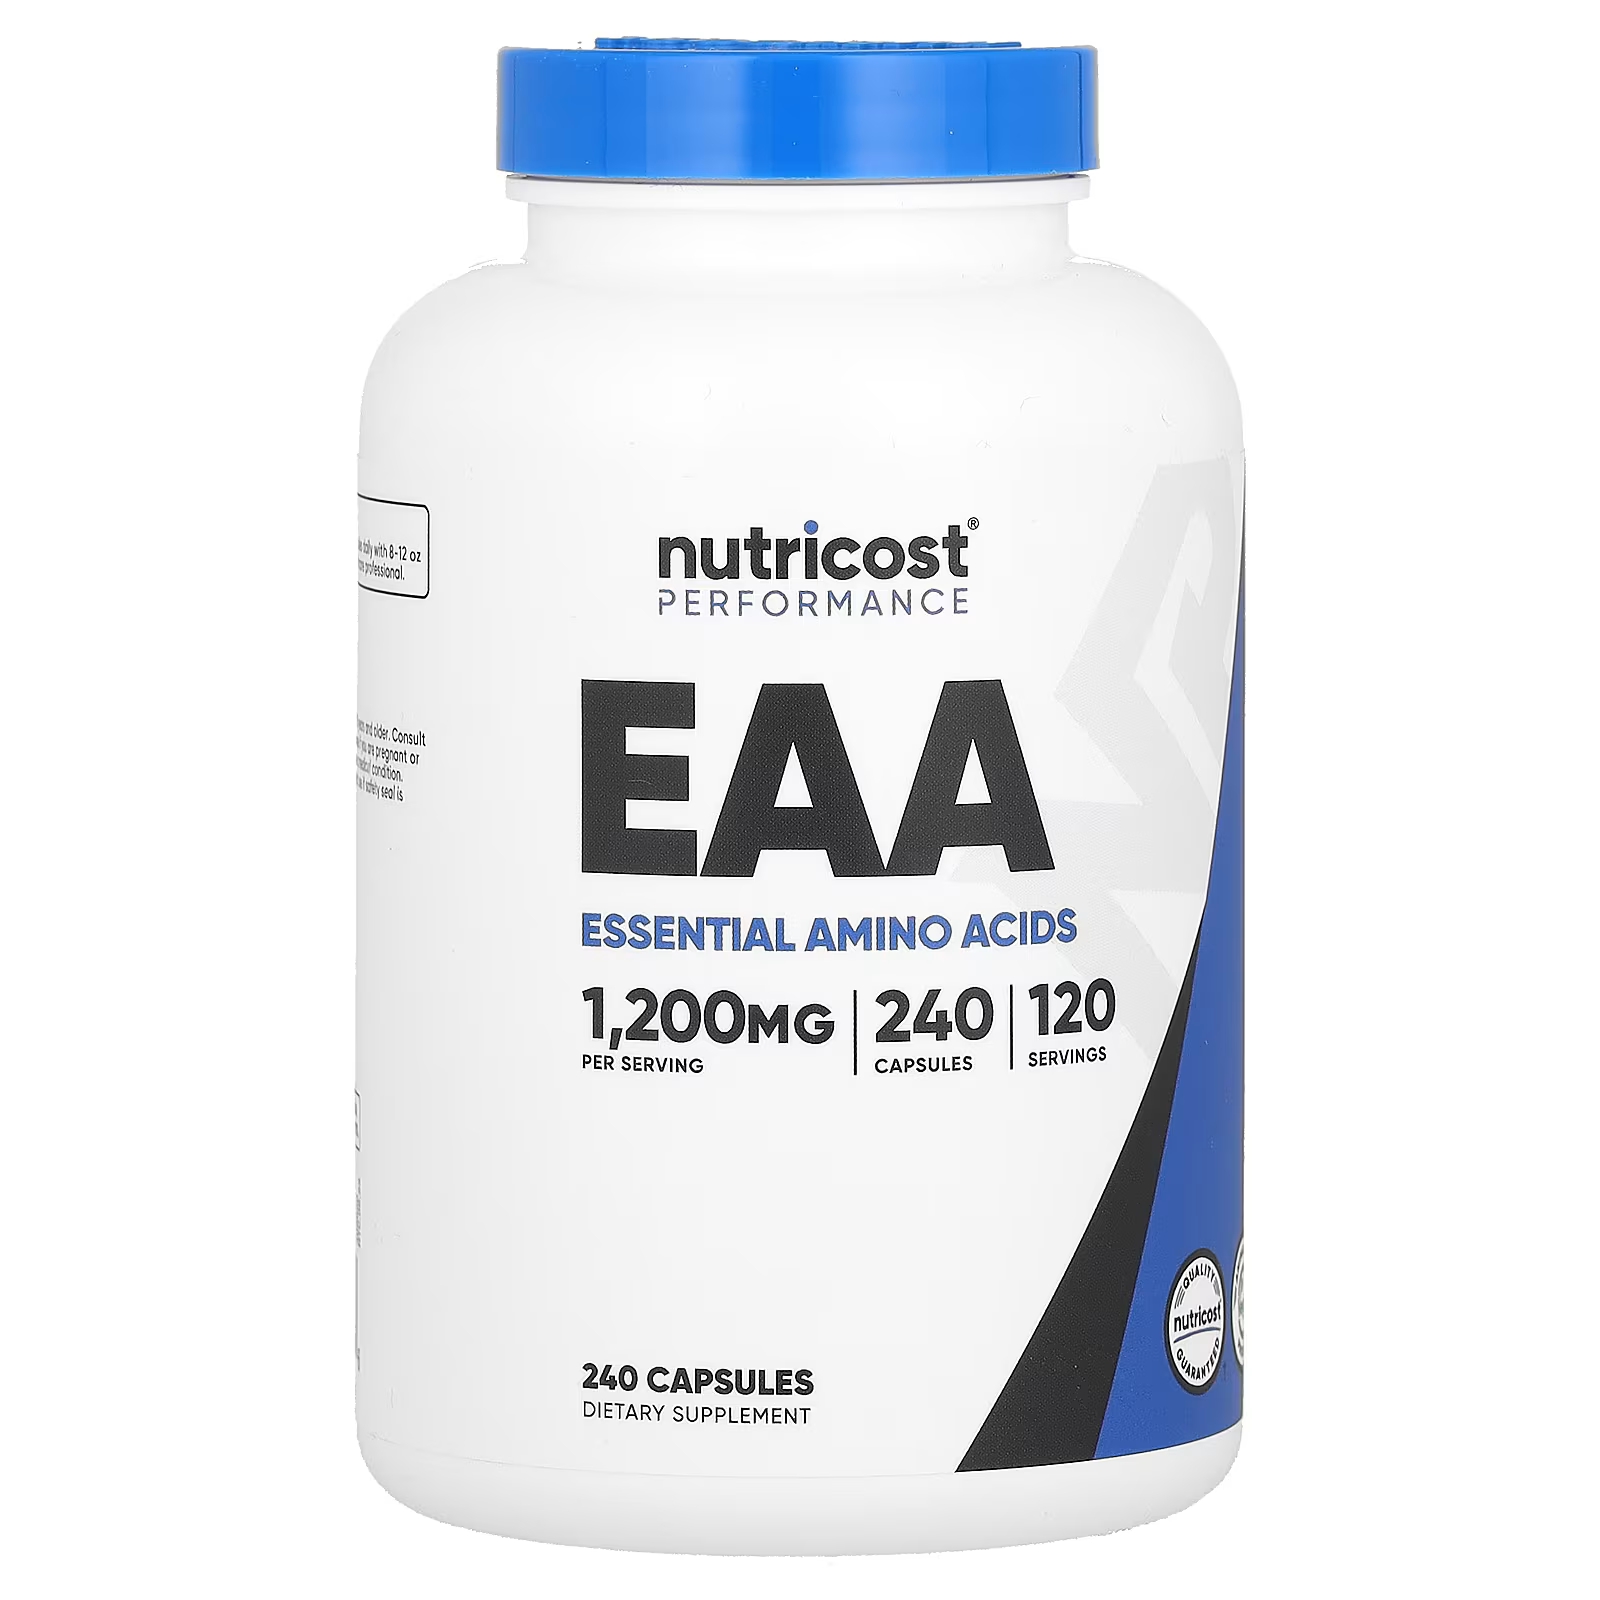 Пищевая добавка Nutricost Performance EAA 1200 мг, 240 капсул (600 мг на капсулу) nutricost гриб хвост индейки 1200 мг 120 капсул 600 мг на капсулу